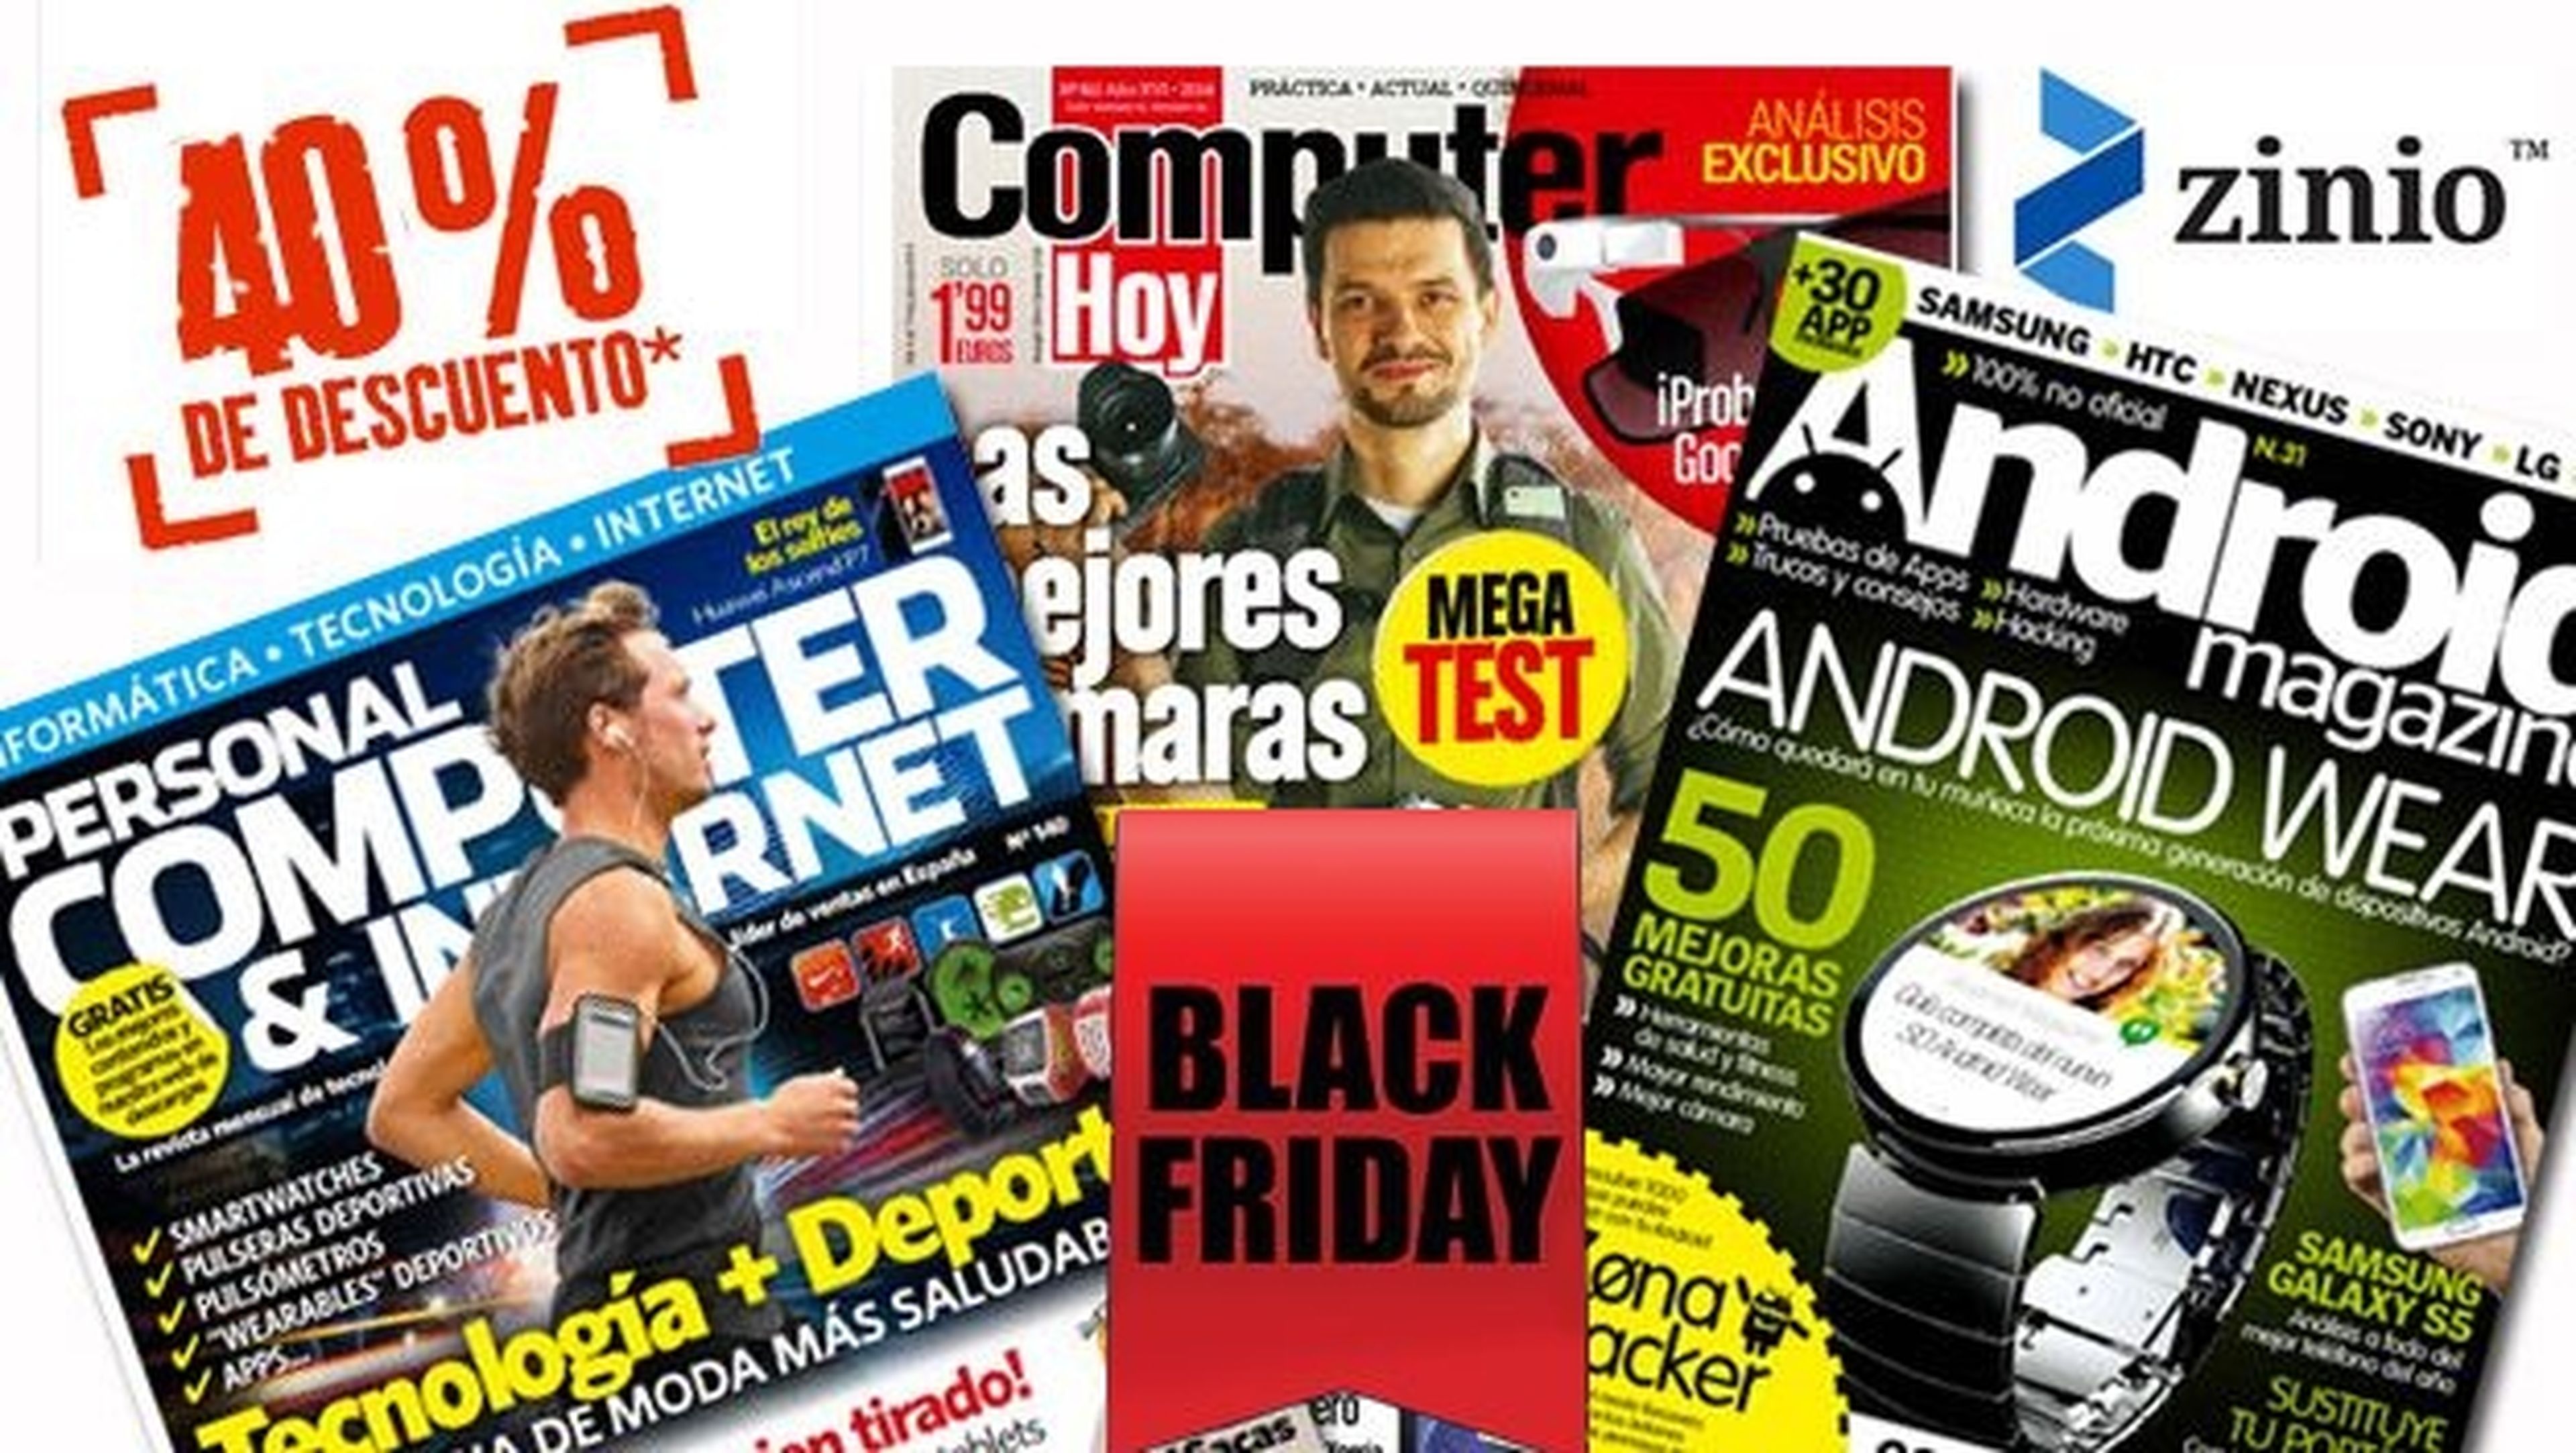 Black Friday y Cyber Monday en Zinio: 40% de descuento en revistas